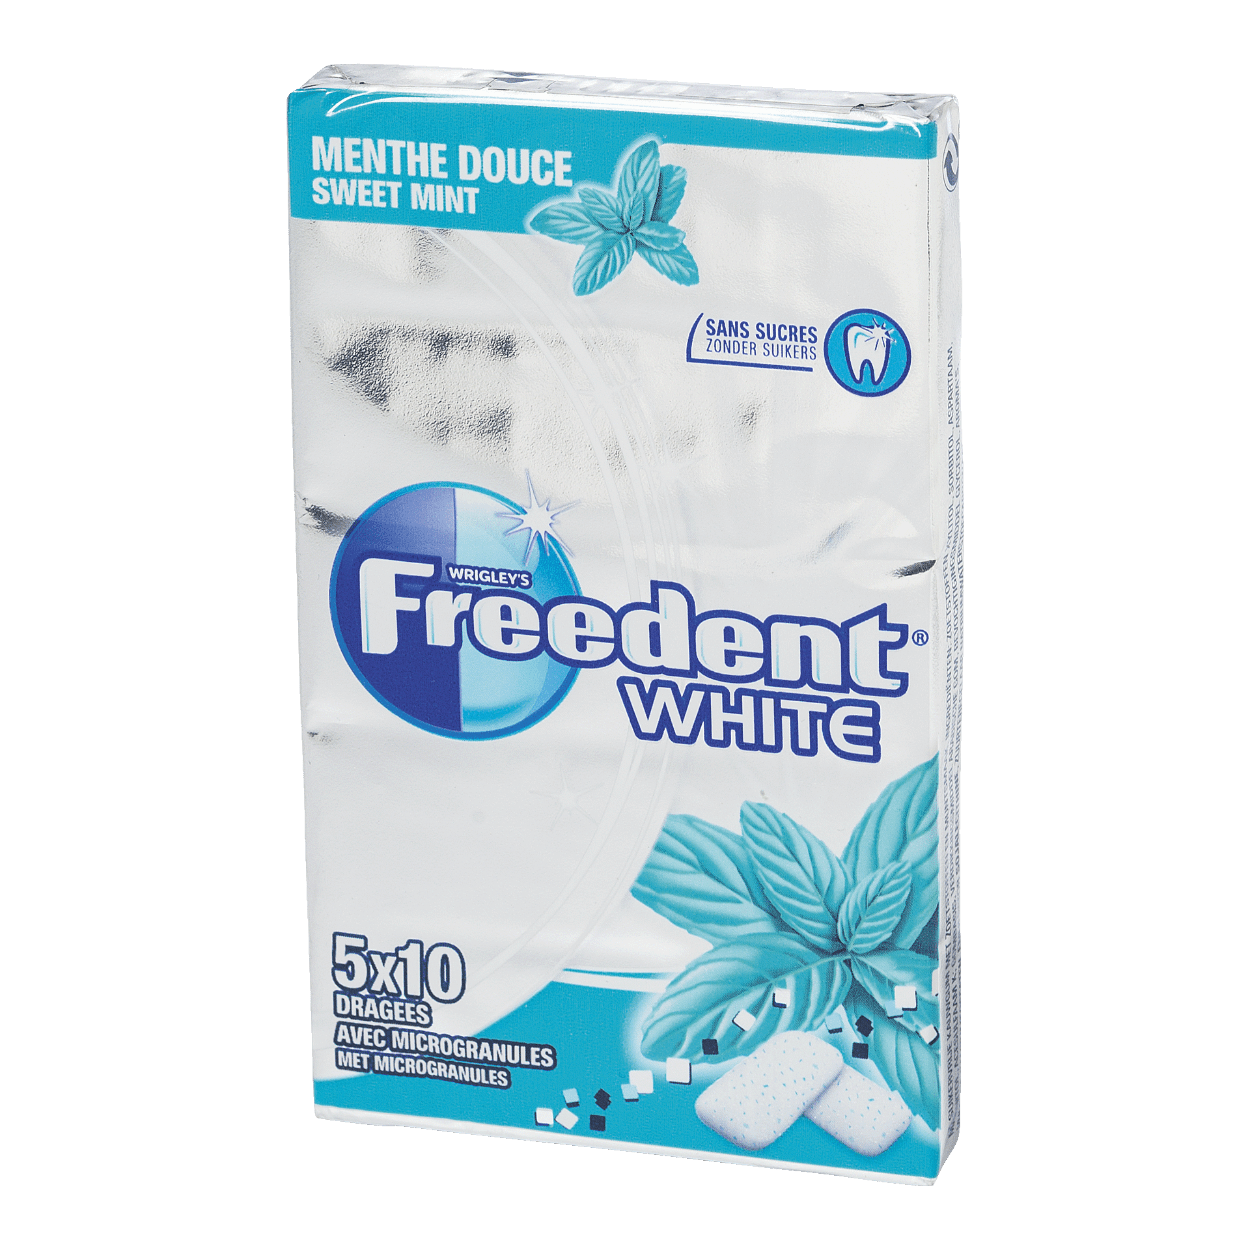 FREEDENT® Chewing gum bon marché chez ALDI